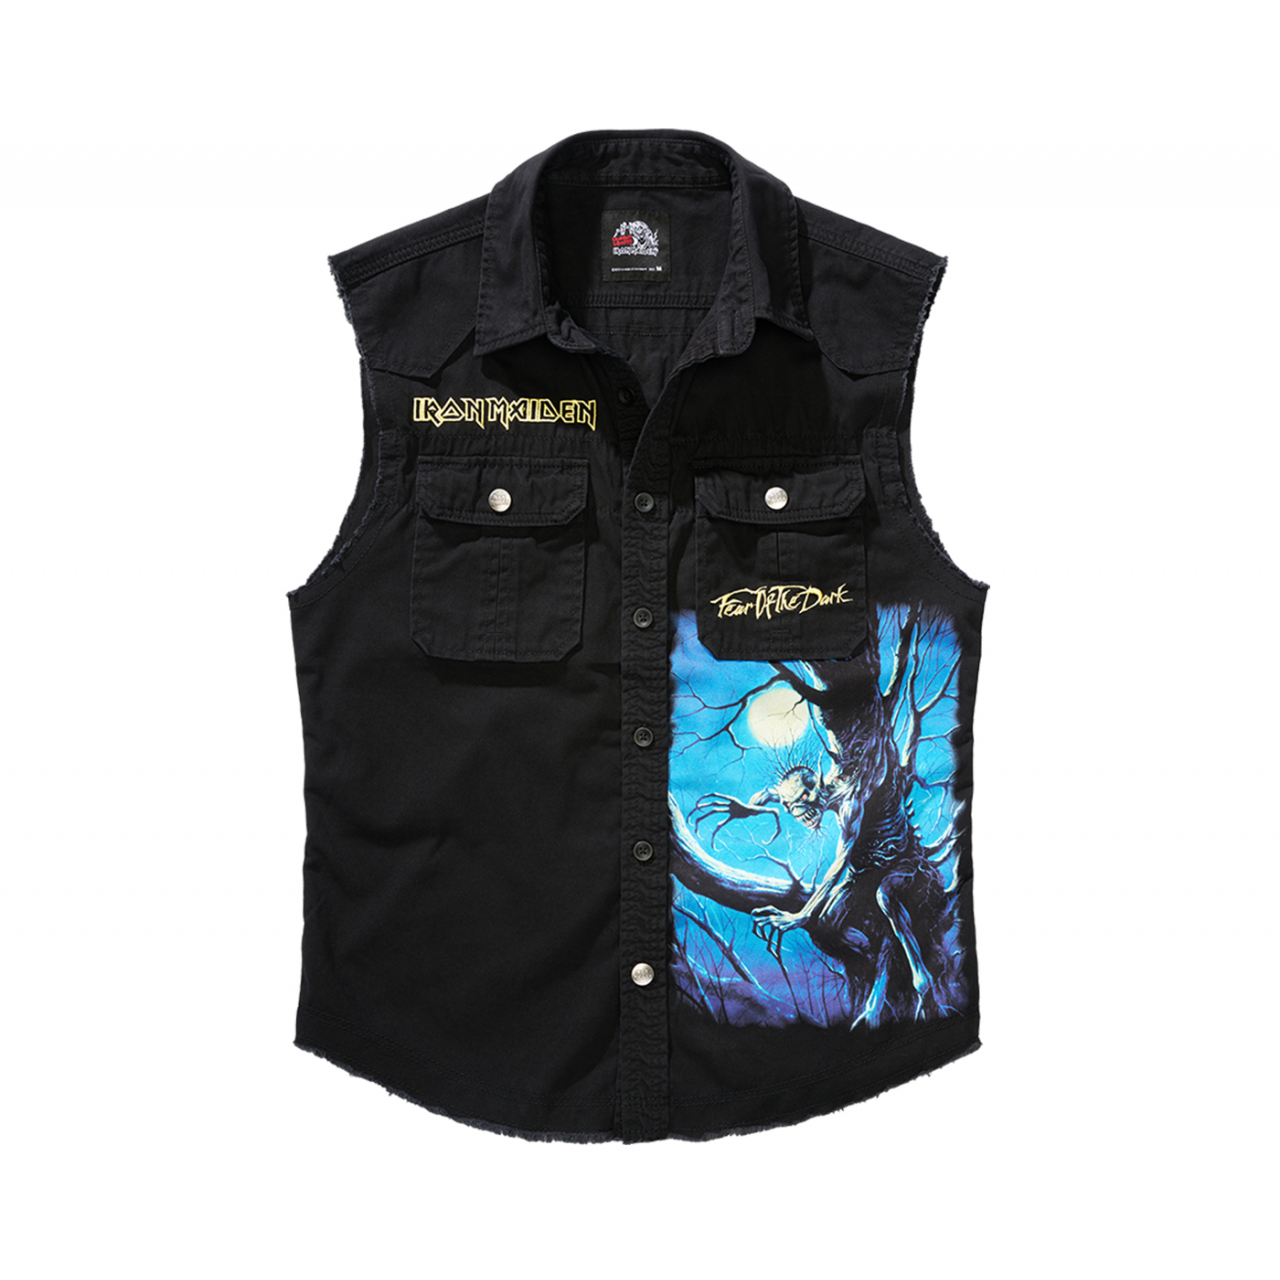 Košile Brandit Iron Maiden Vintage Shirt Sleeveless FOTD - černá, XXL